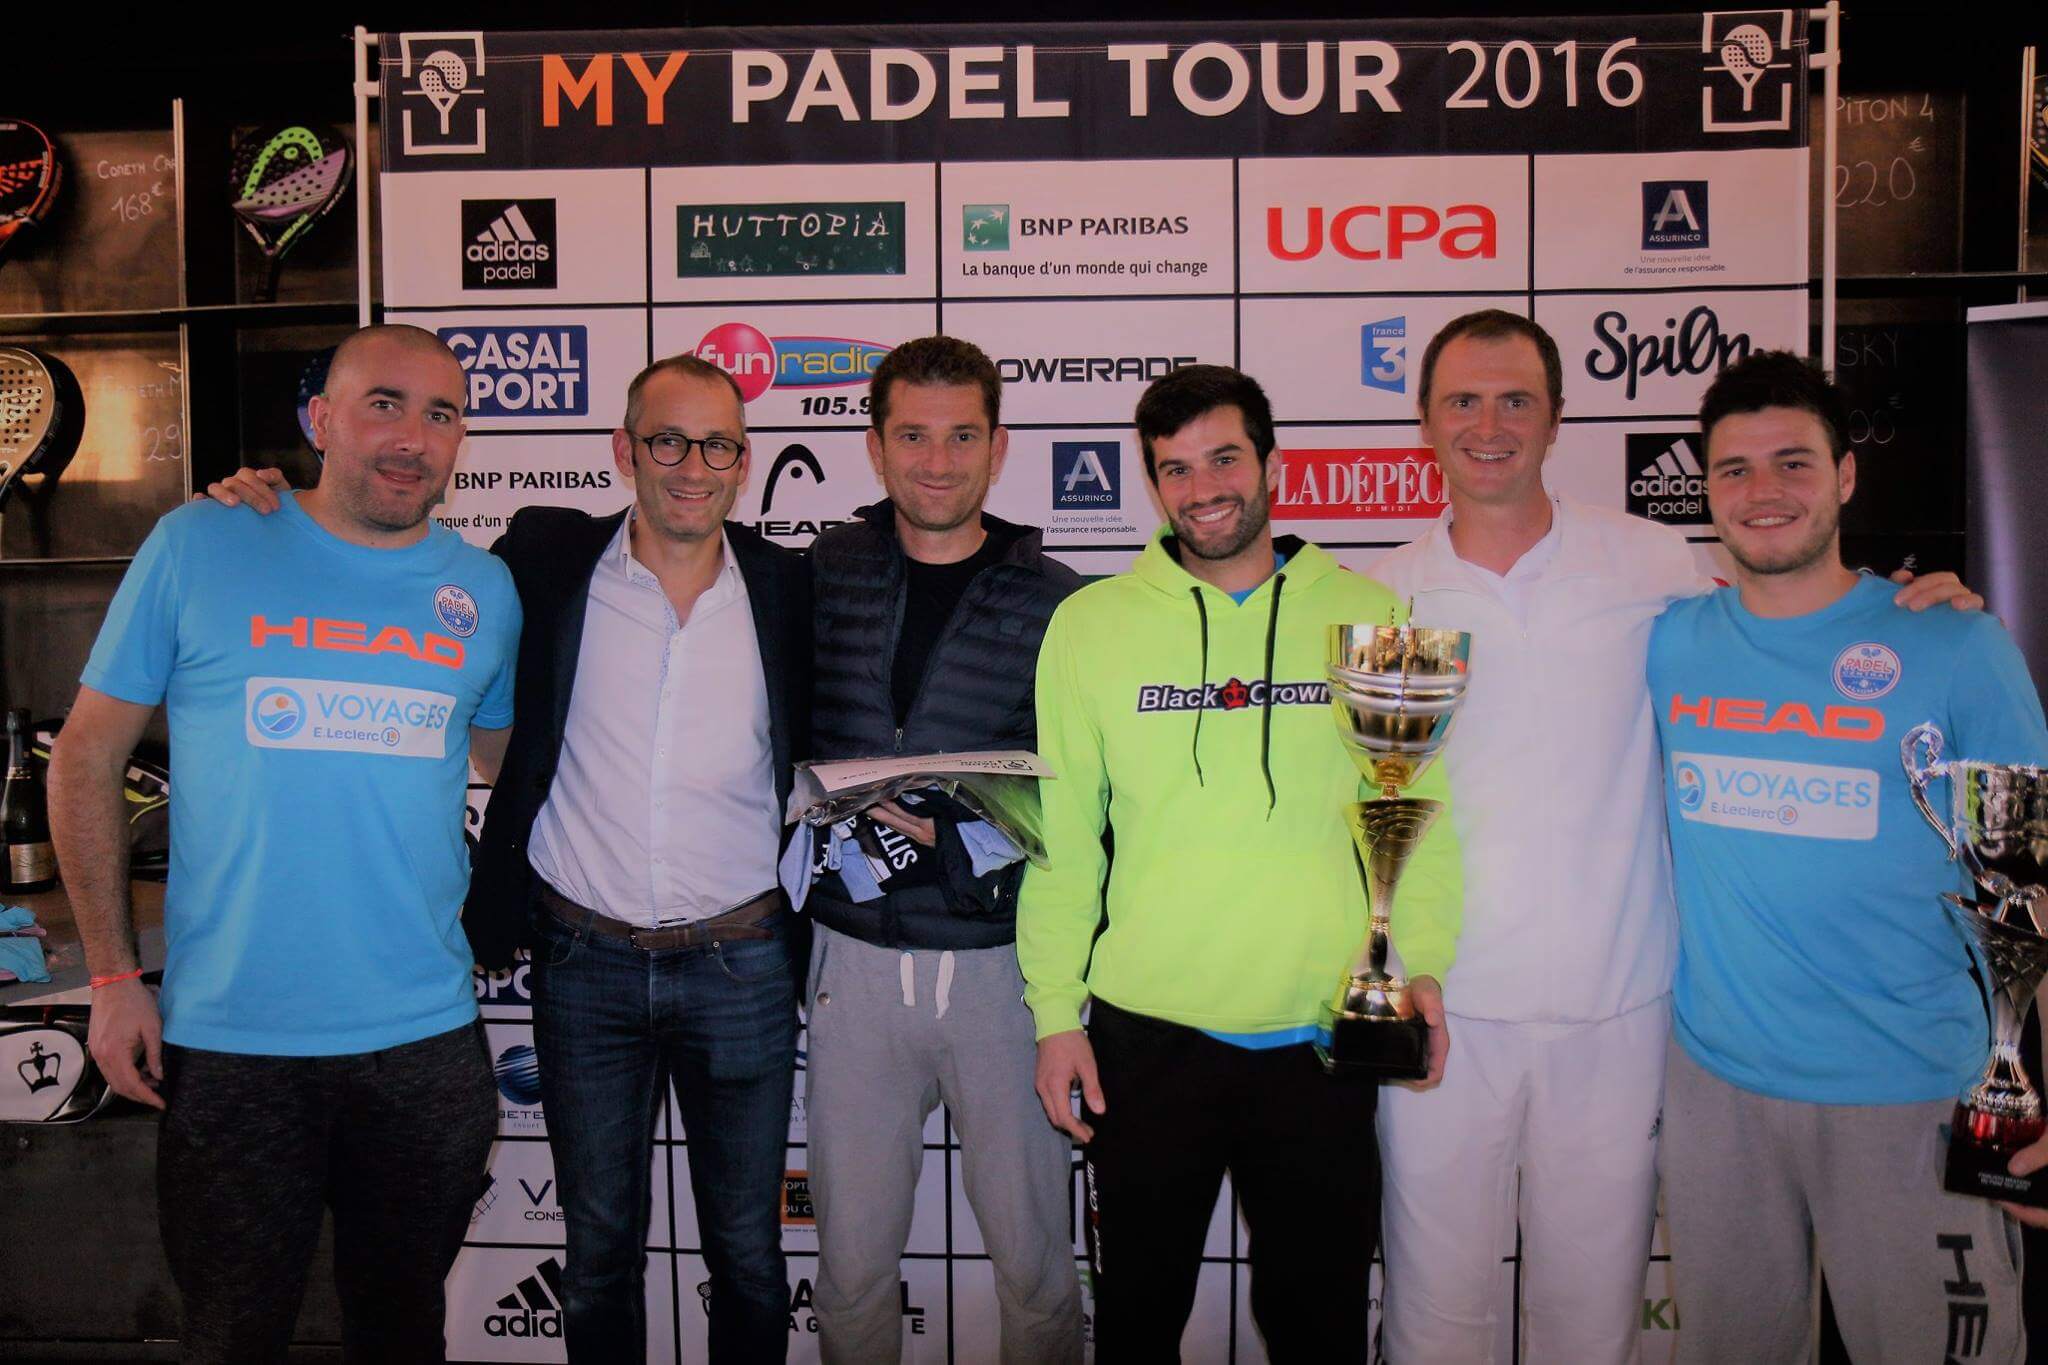 Ferrandez / Gauthier en Vandaele / Godallier winnen op My Padel Tour 2016